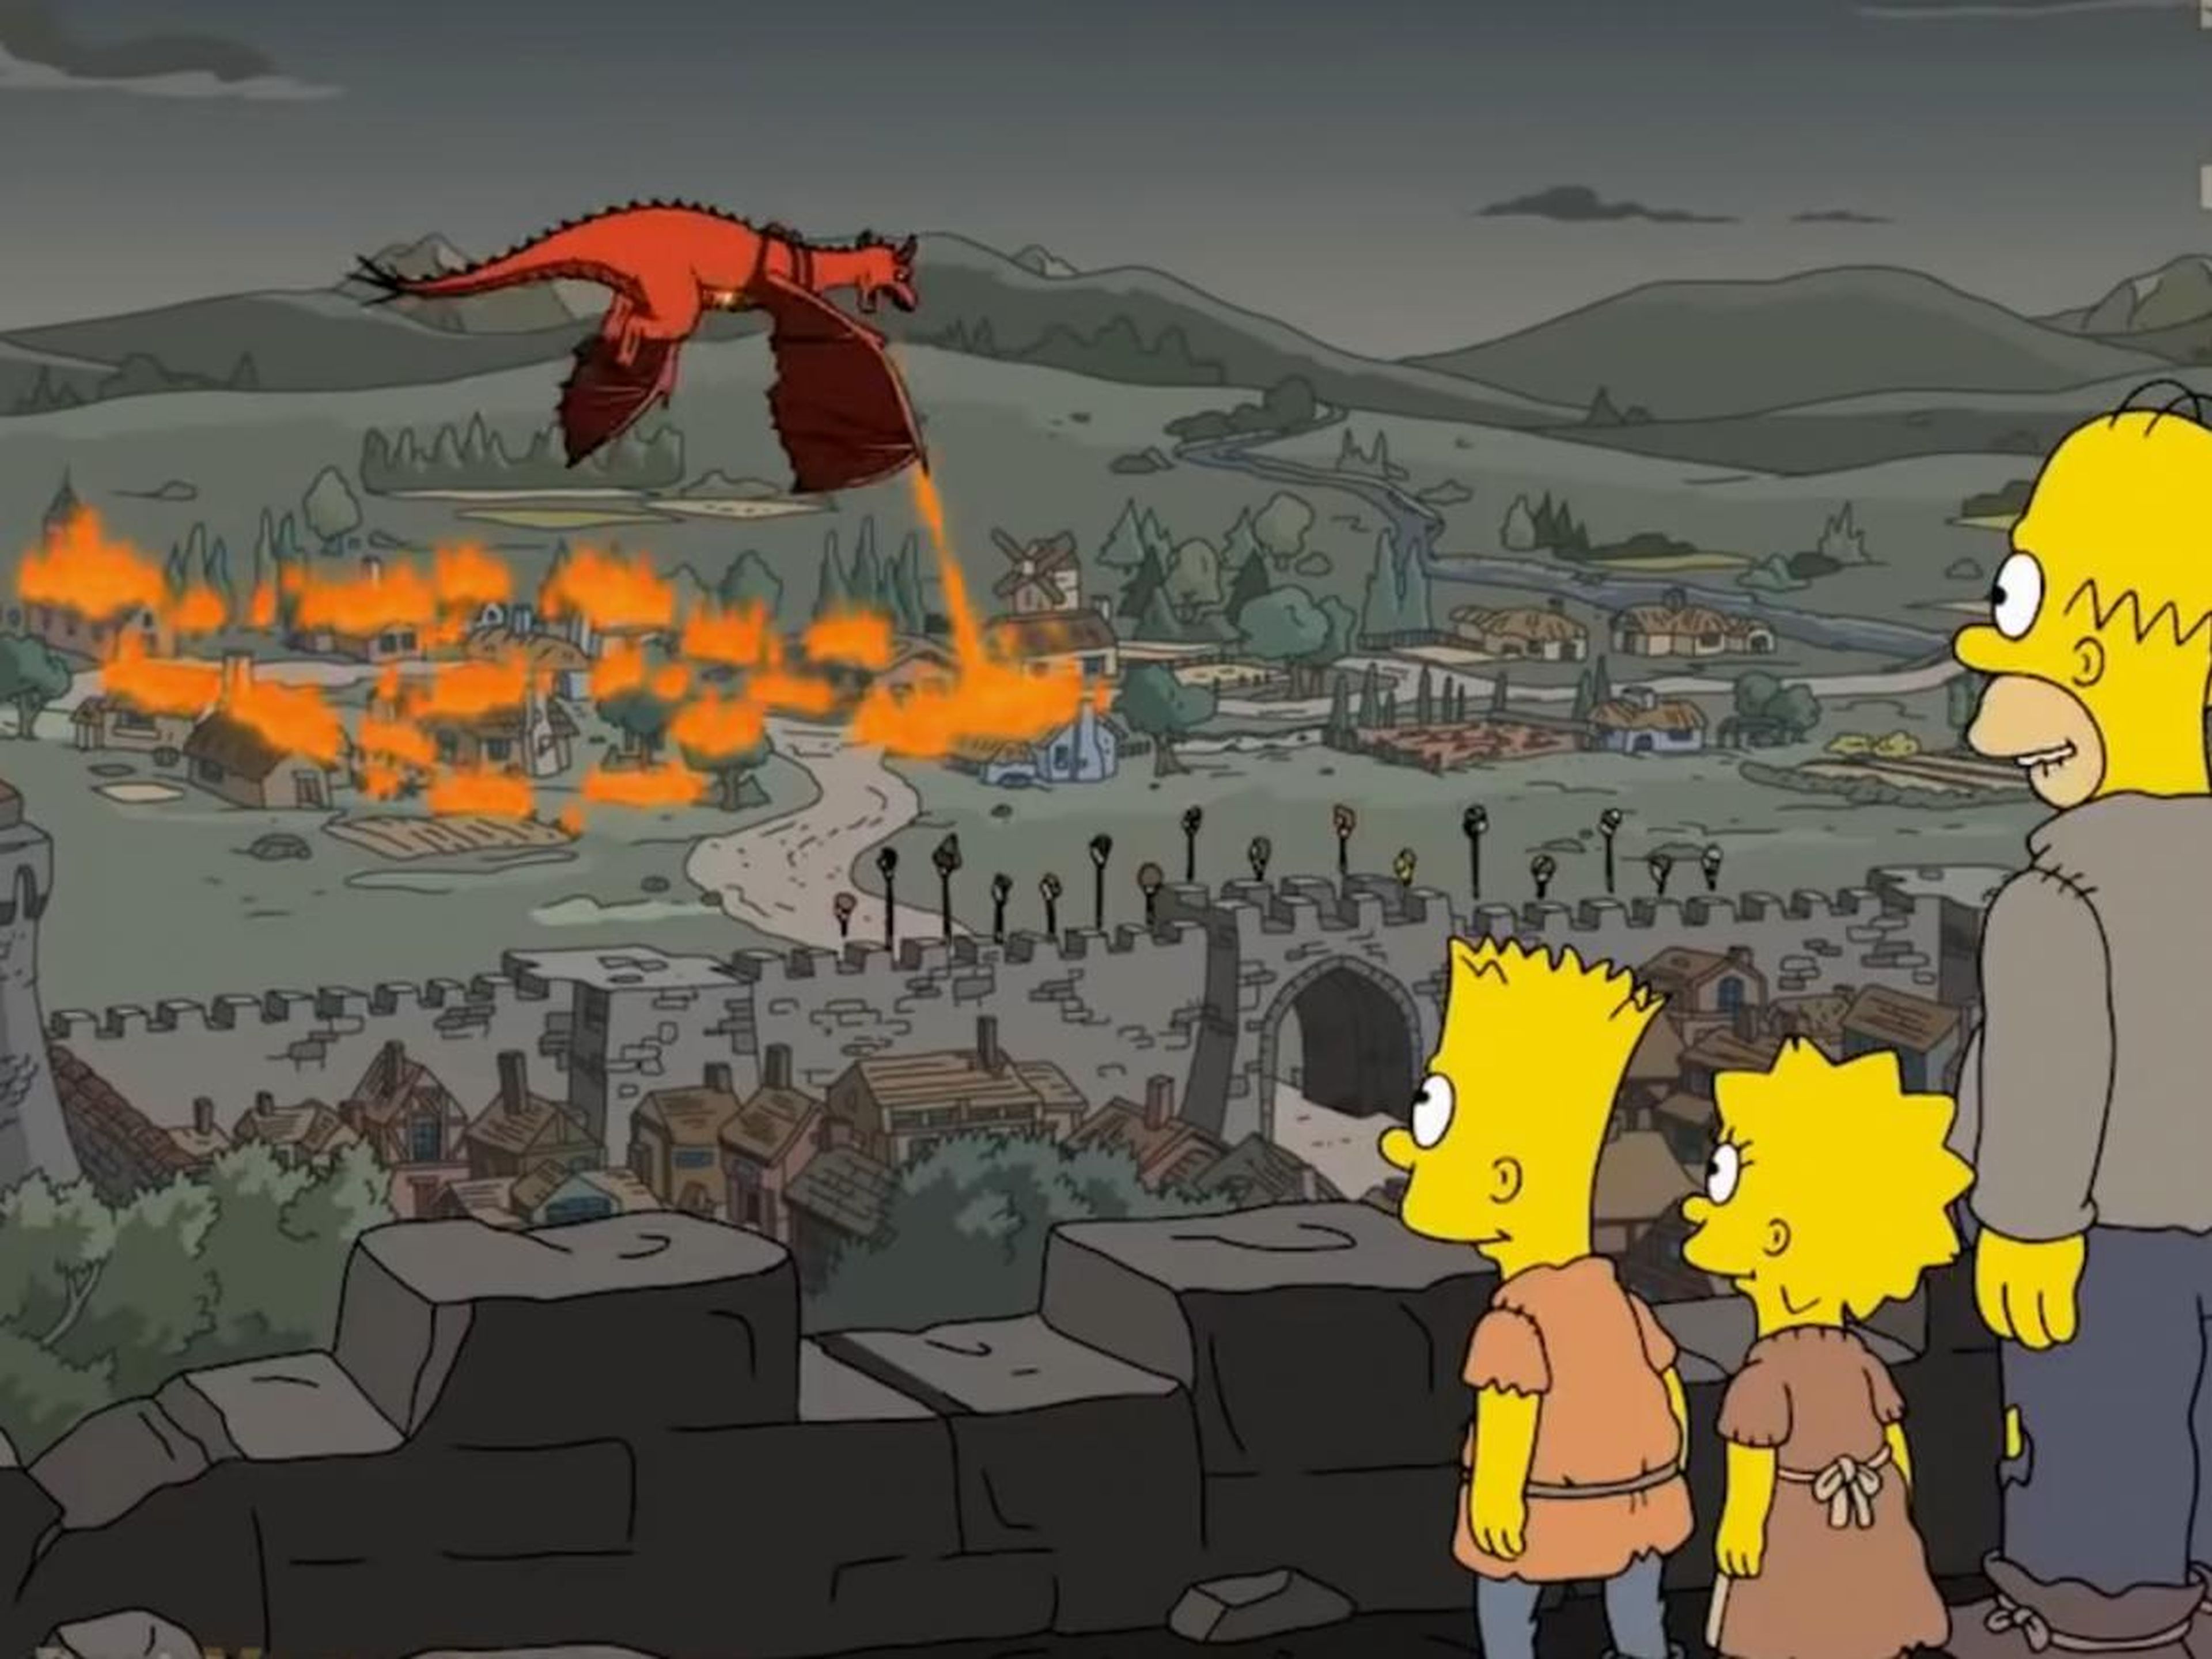 Una escena de "Los Simpsons" en la 29ª temporada en el episodio uno titulado "Los siervos".